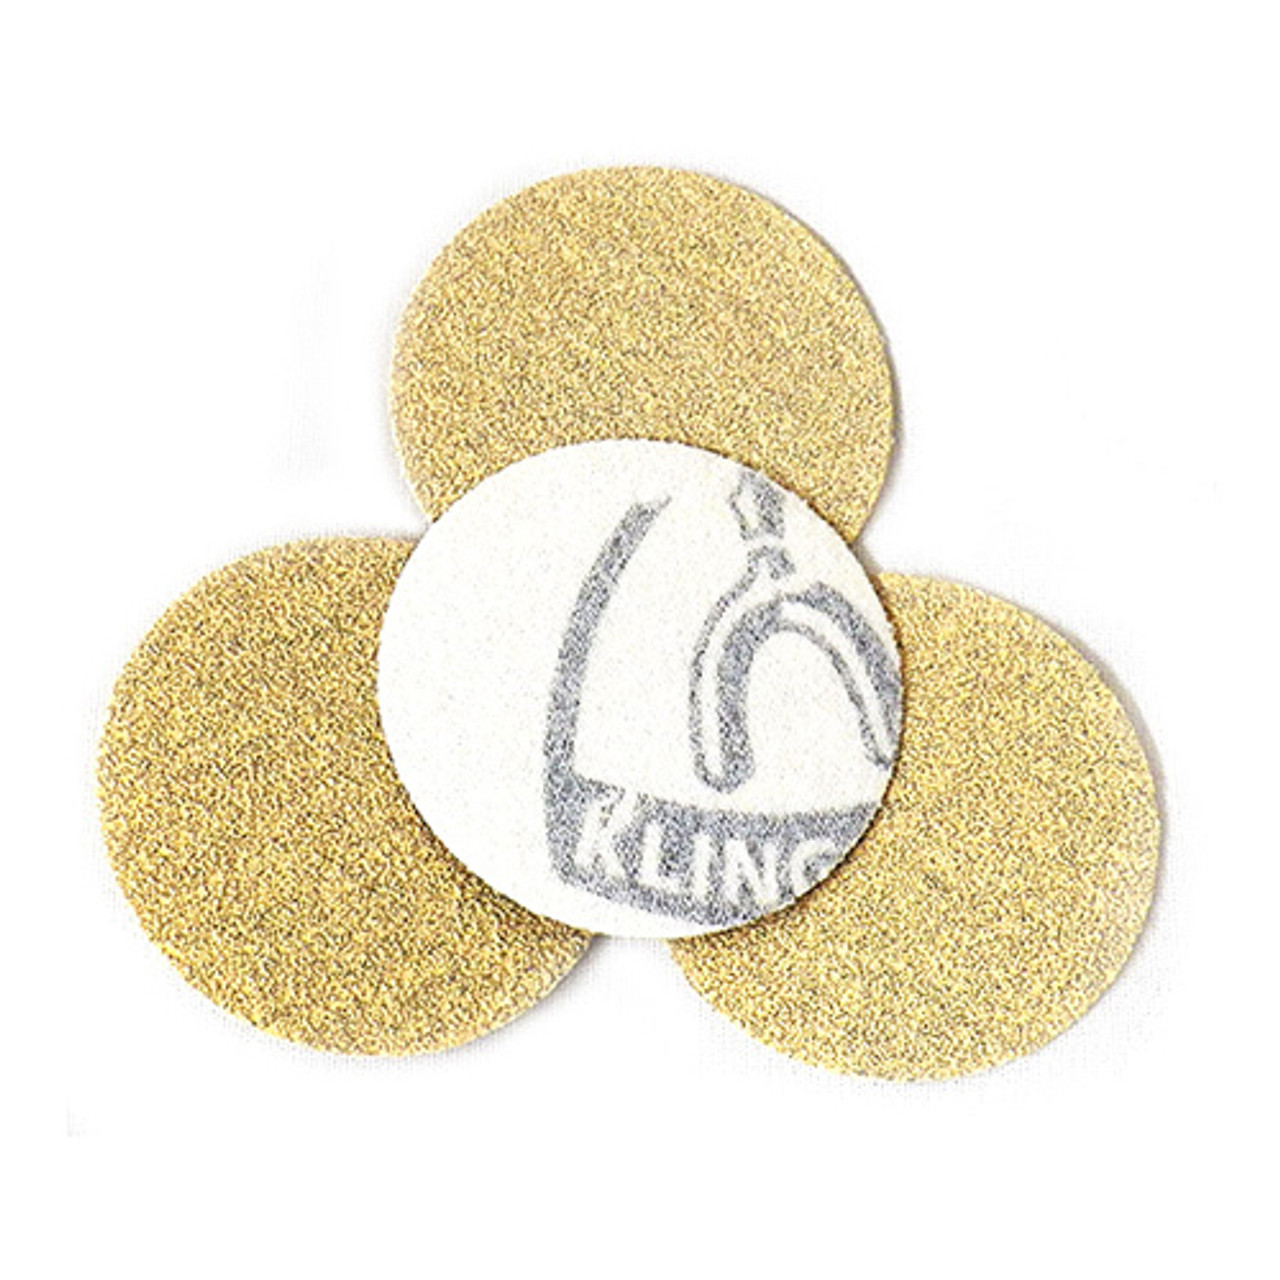 Klingspor Abrasives Stearated Aluminum Oxide, 2" Hook & Loop Discs, 150 Grit, 10pk